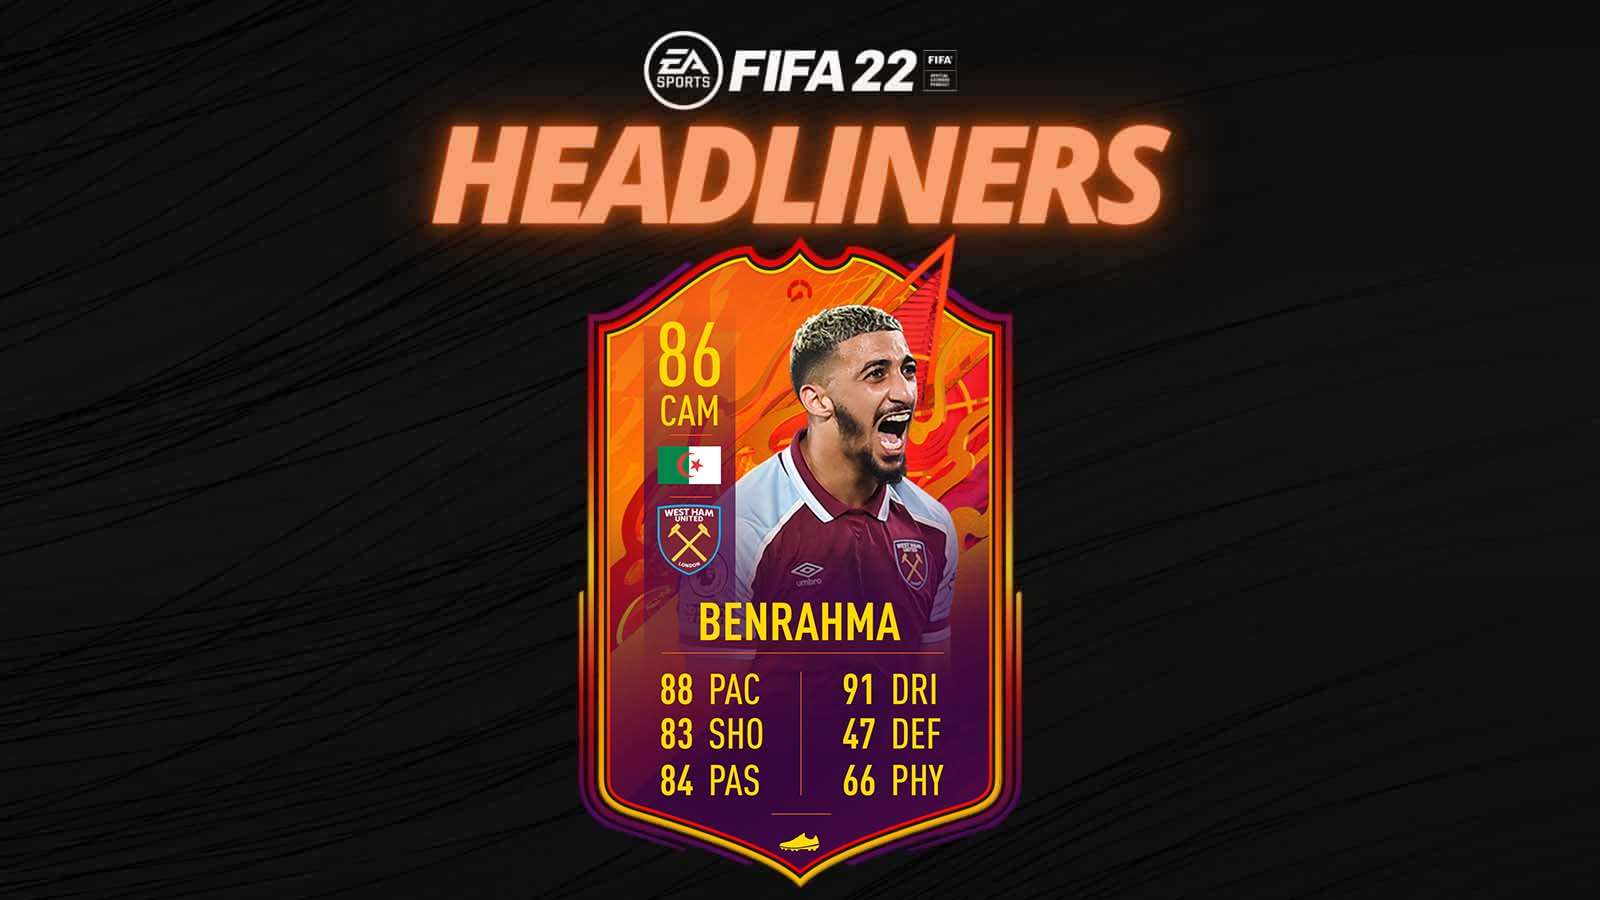 FIFA 22 Headliners Benrahma